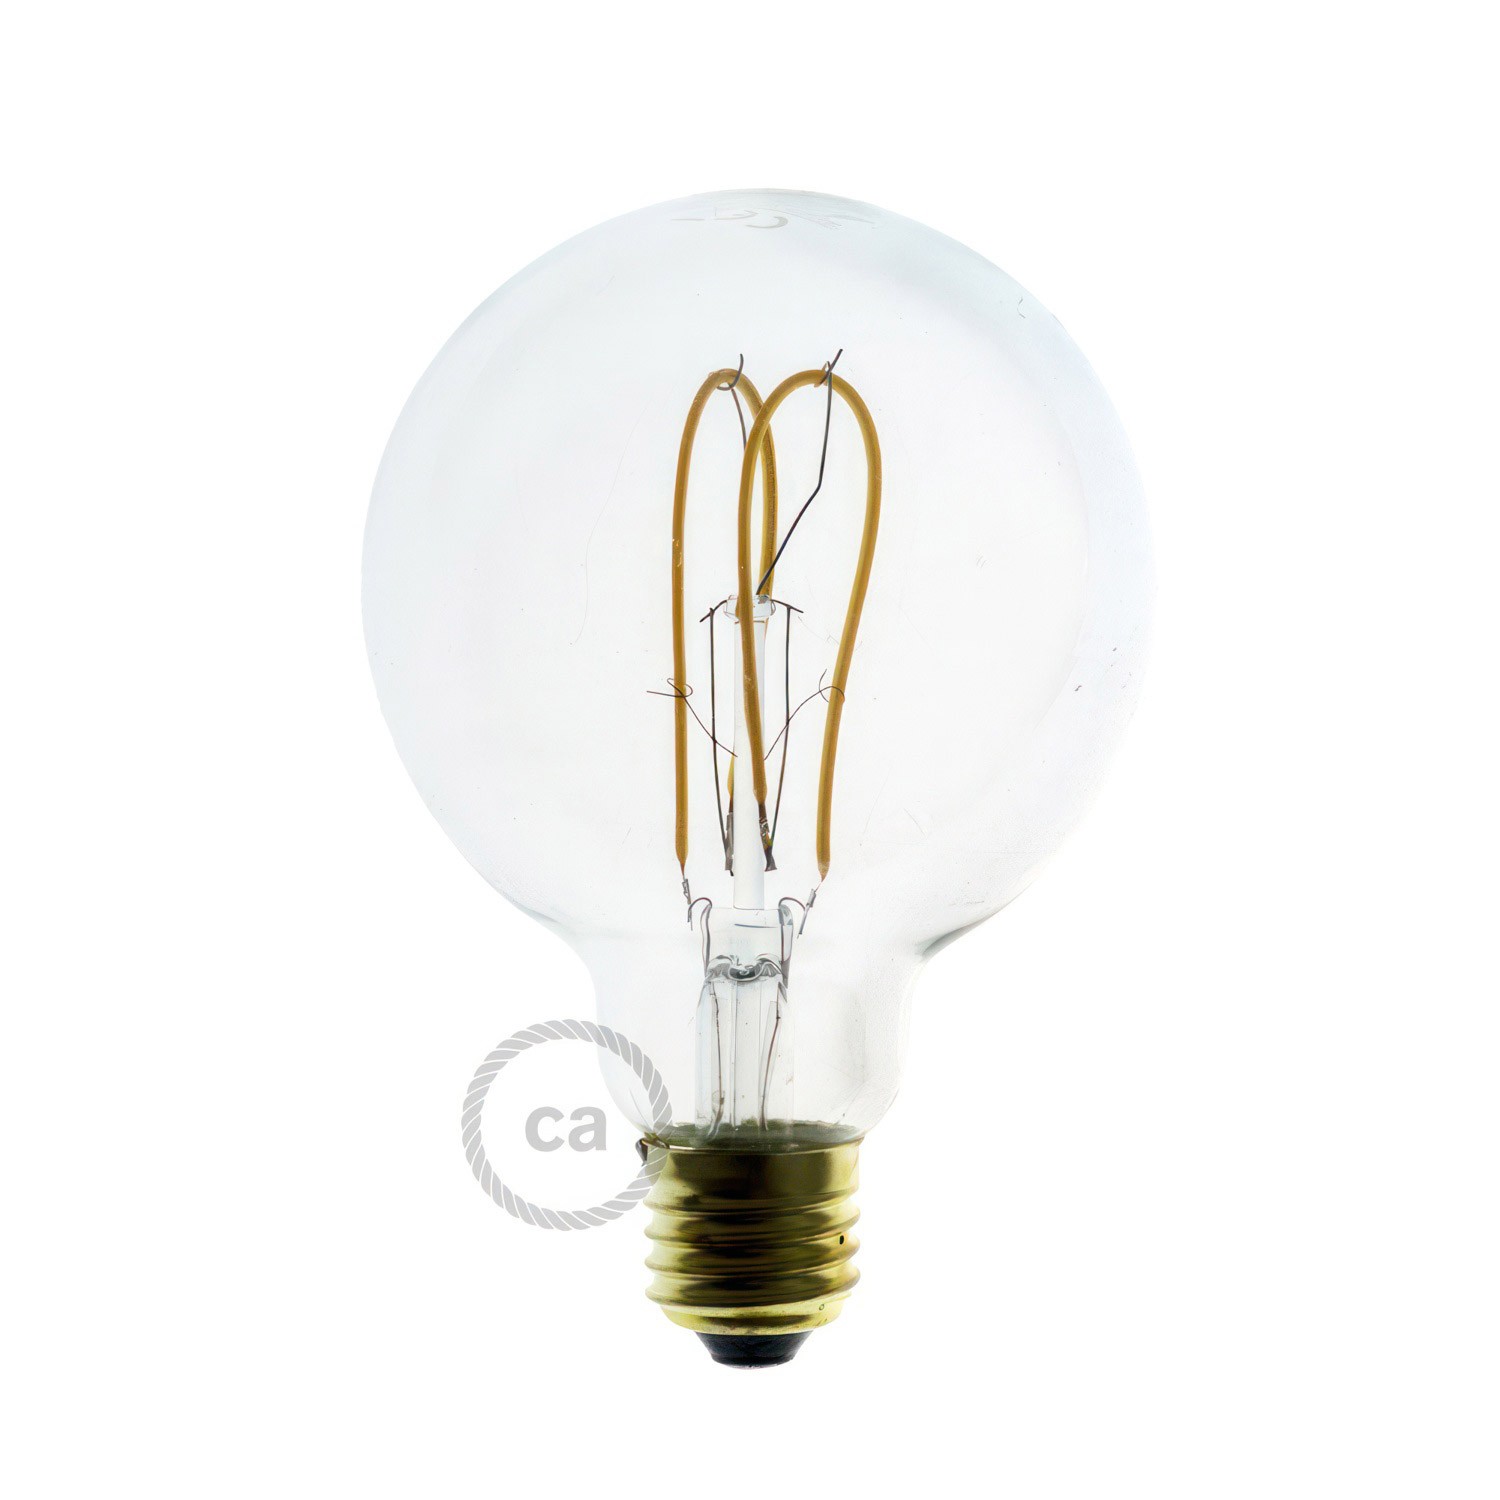 Support de lampe universel pour ampoule à douille E27 orientable